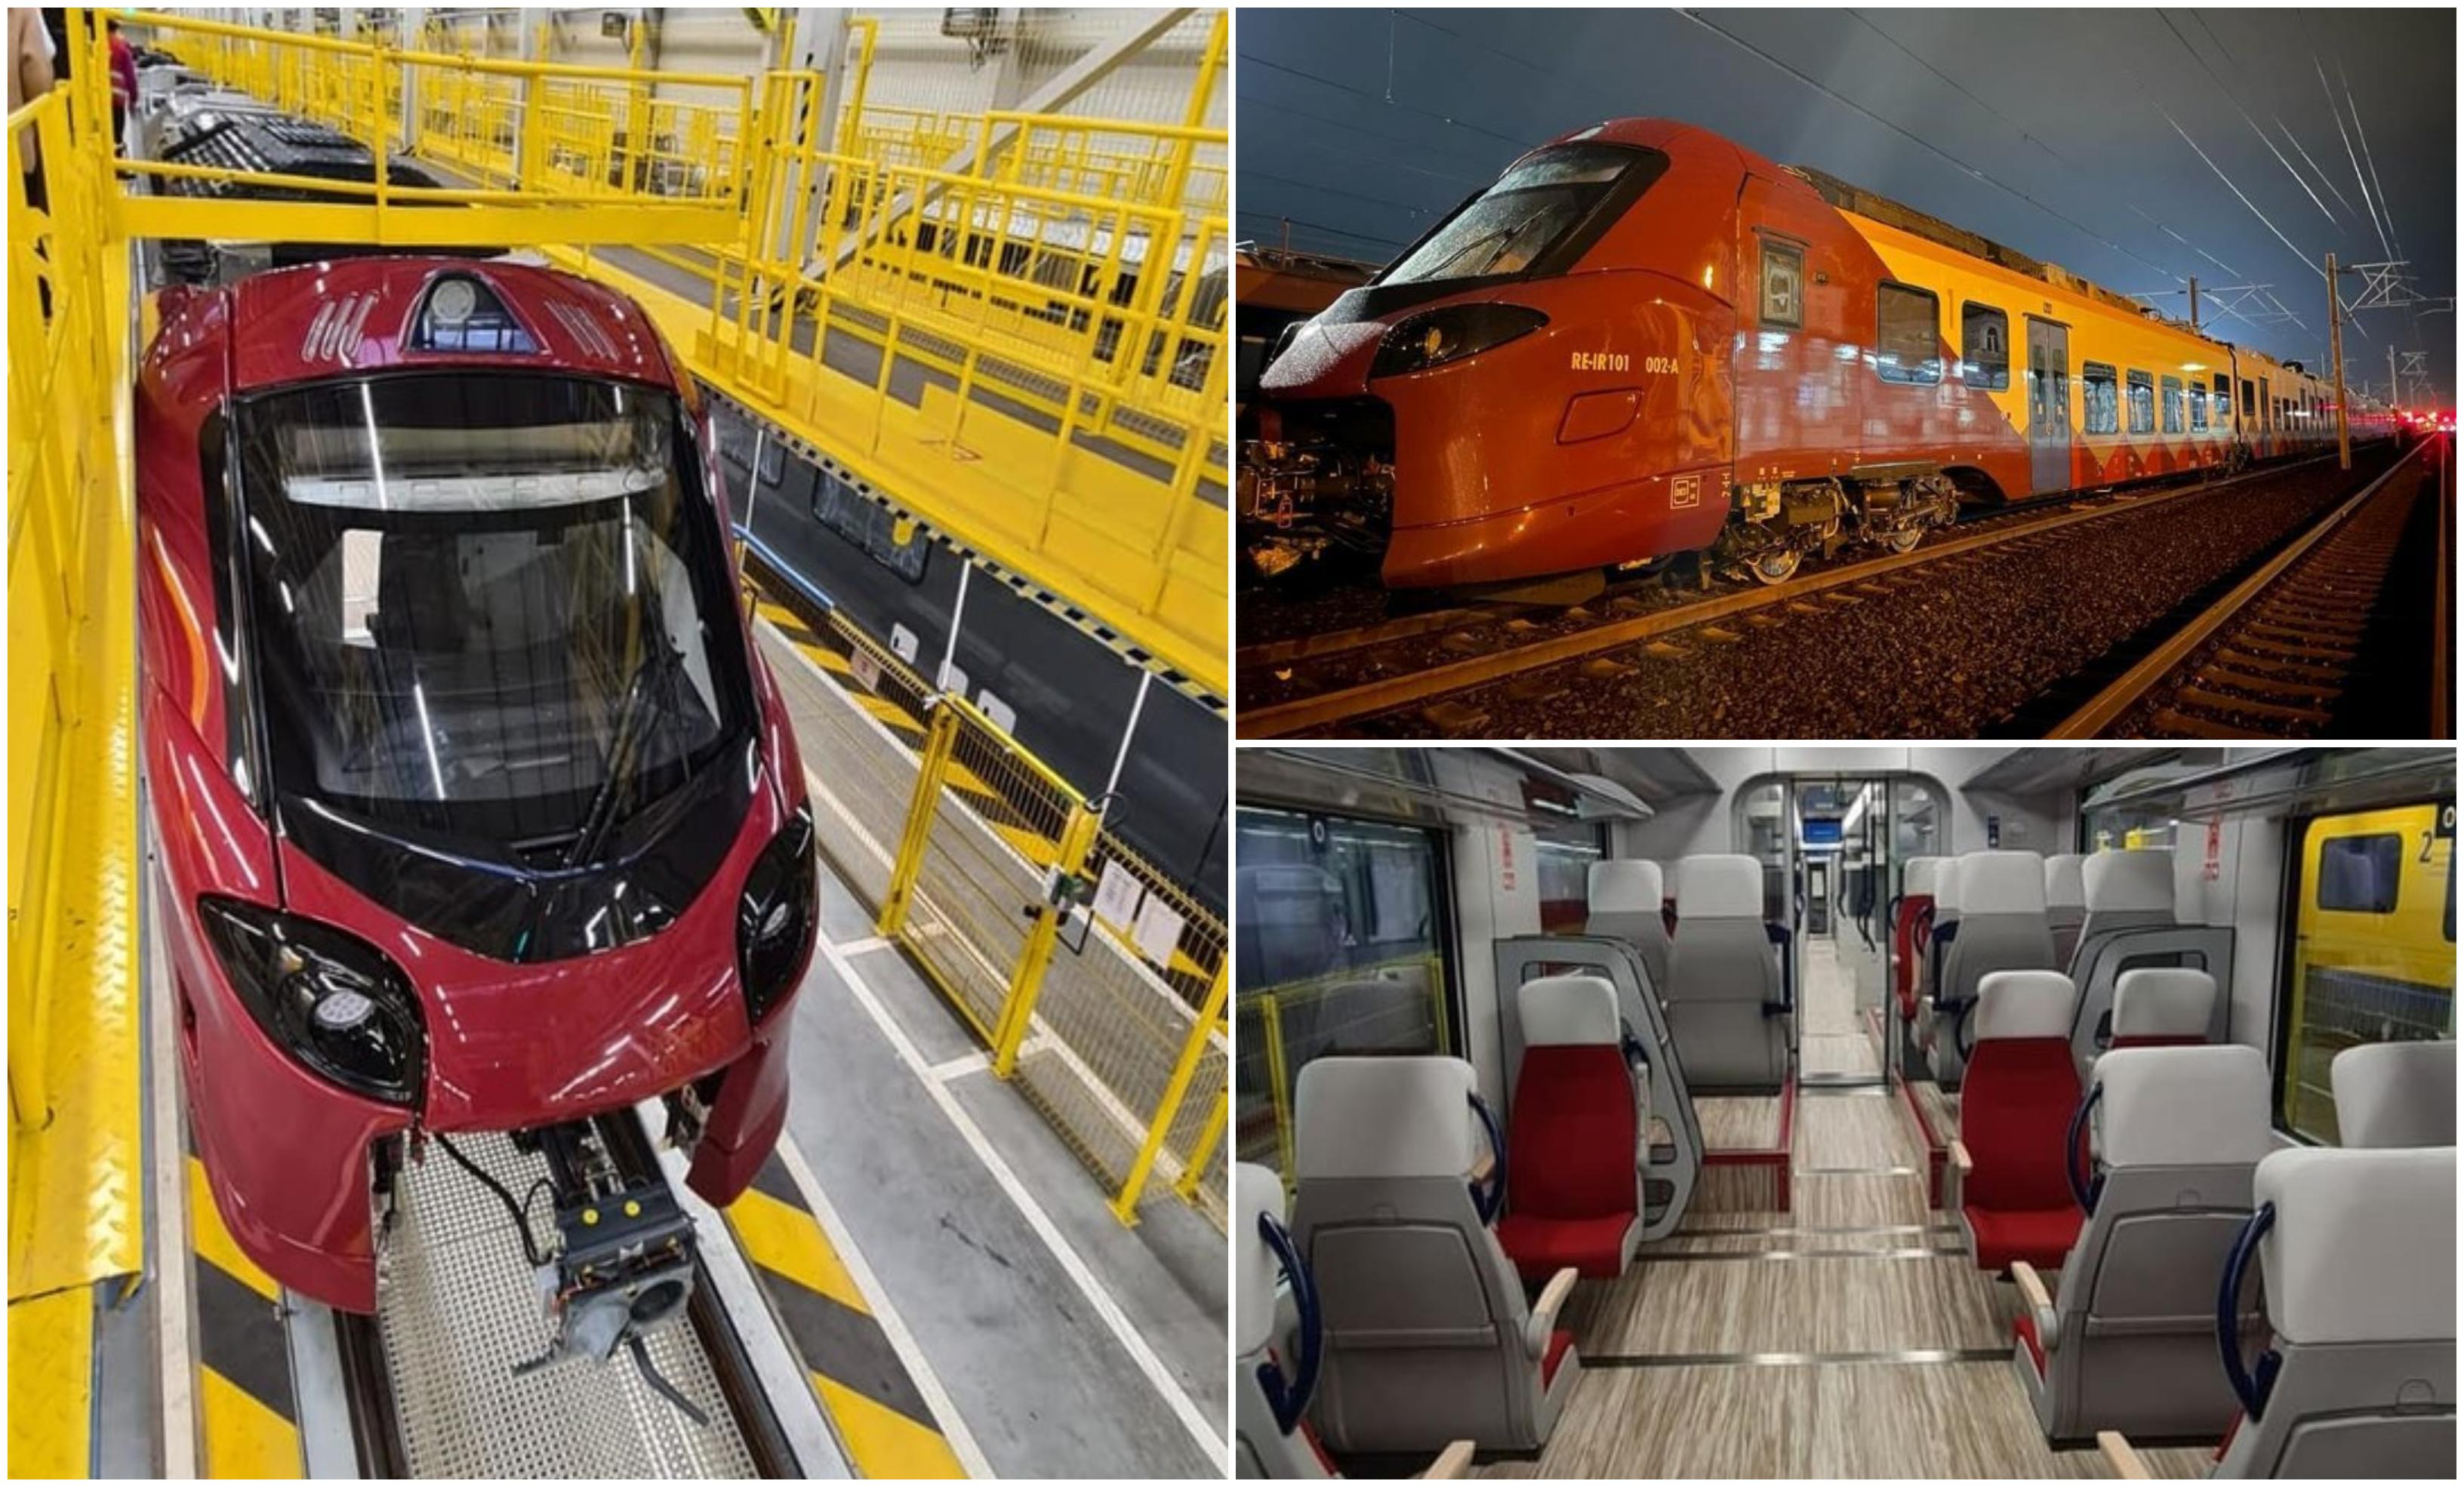 Primul tren electric produs de Alstom pentru România a ajuns în ţară. Va circula pe ruta Bucureşti - Constanţa